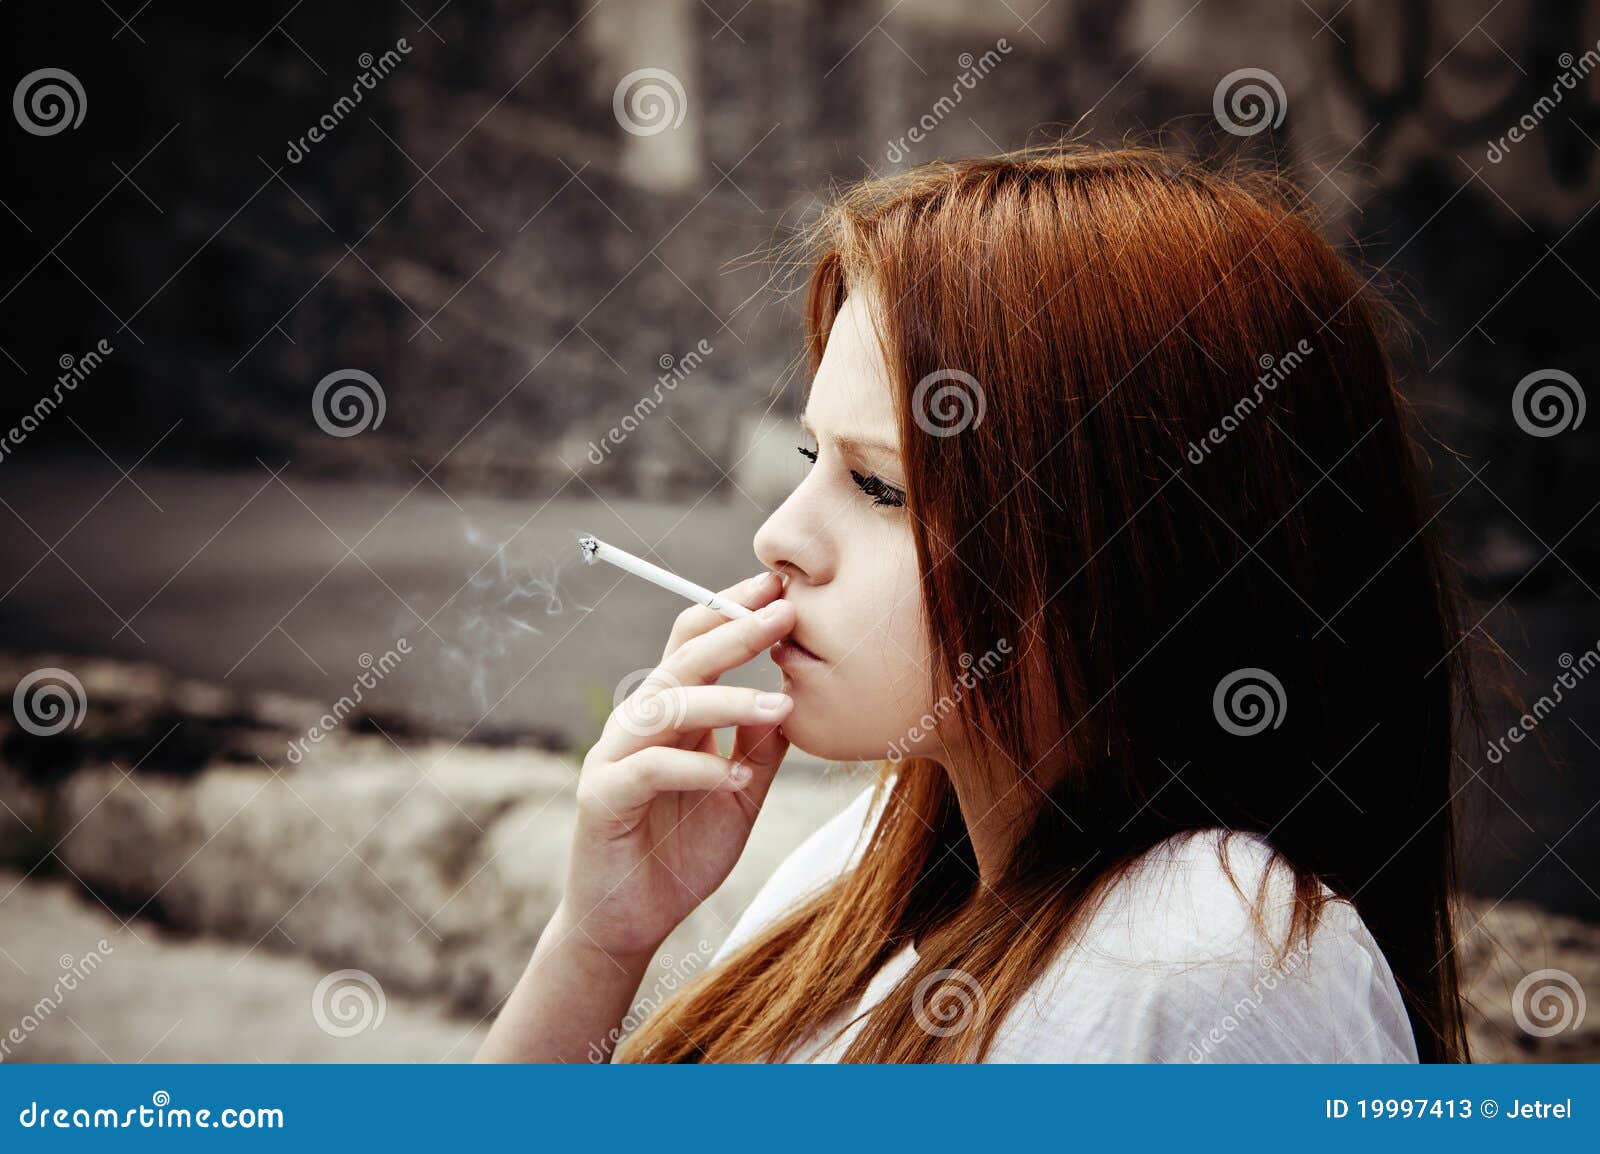 美女一个人孤独抽烟图片 - 站长素材